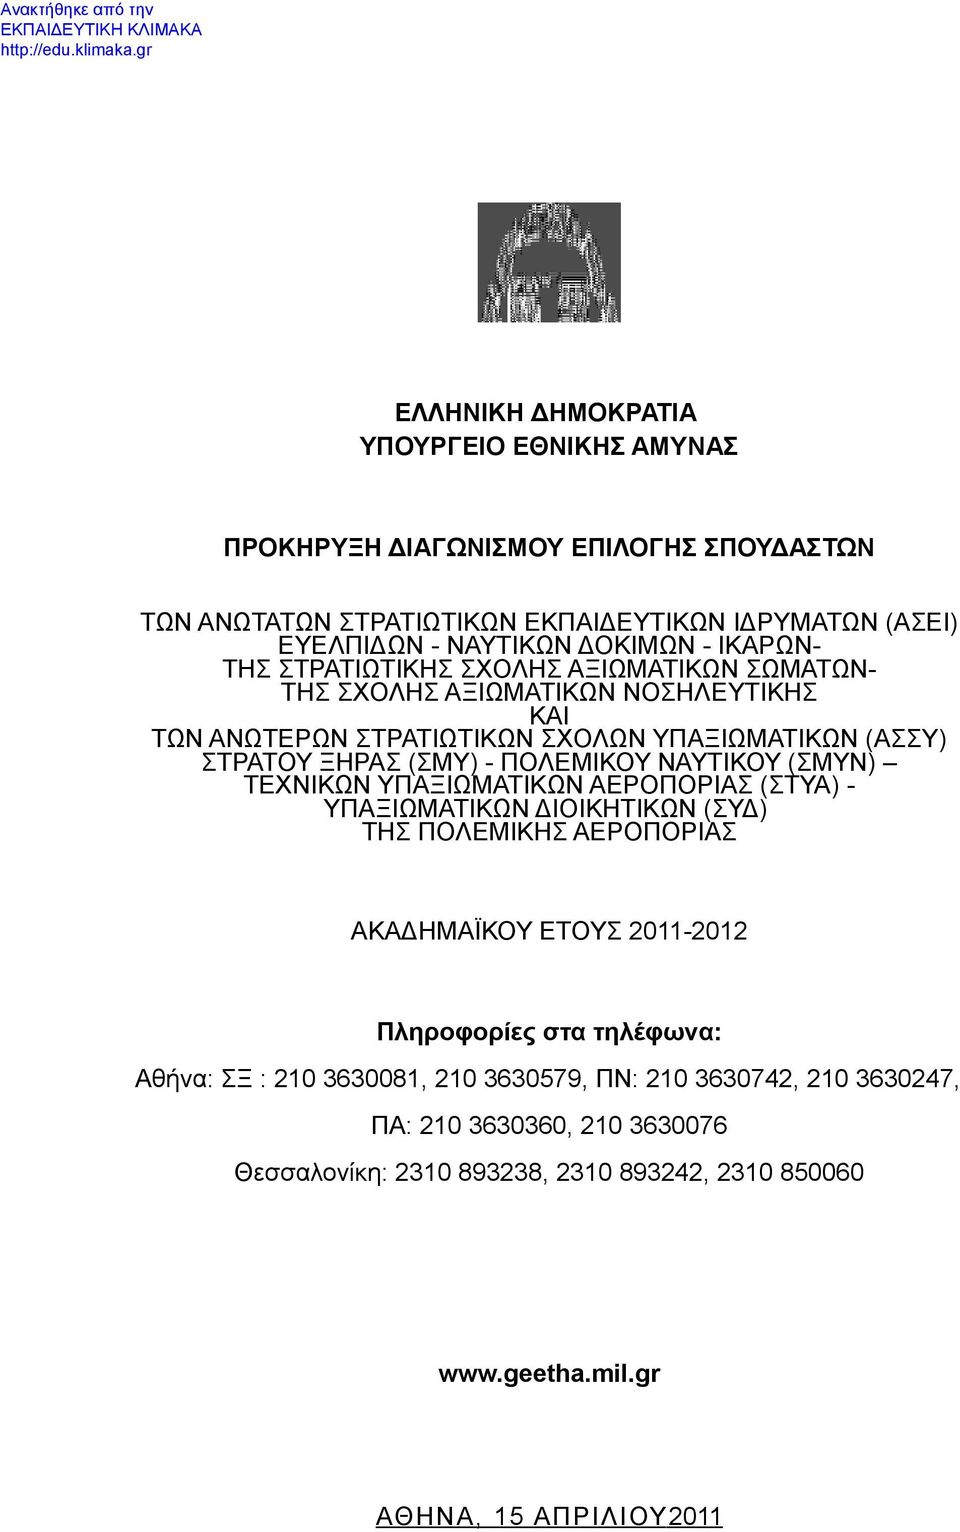 ΝΑΥΤΙΚΟΥ (ΣΜΥΝ) ΤΕΧΝΙΚΩΝ ΥΠΑΞΙΩΜΑΤΙΚΩΝ ΑΕΡΟΠΟΡΙΑΣ (ΣΤΥΑ) - ΥΠΑΞΙΩΜΑΤΙΚΩΝ ΔΙΟΙΚΗΤΙΚΩΝ (ΣΥΔ) ΤΗΣ ΠΟΛΕΜΙΚΗΣ ΑΕΡΟΠΟΡΙΑΣ ΑΚΑΔΗΜΑΪΚΟΥ ΕΤΟΥΣ 2011-2012 Πληροφορίες στα τηλέφωνα: Αθήνα: